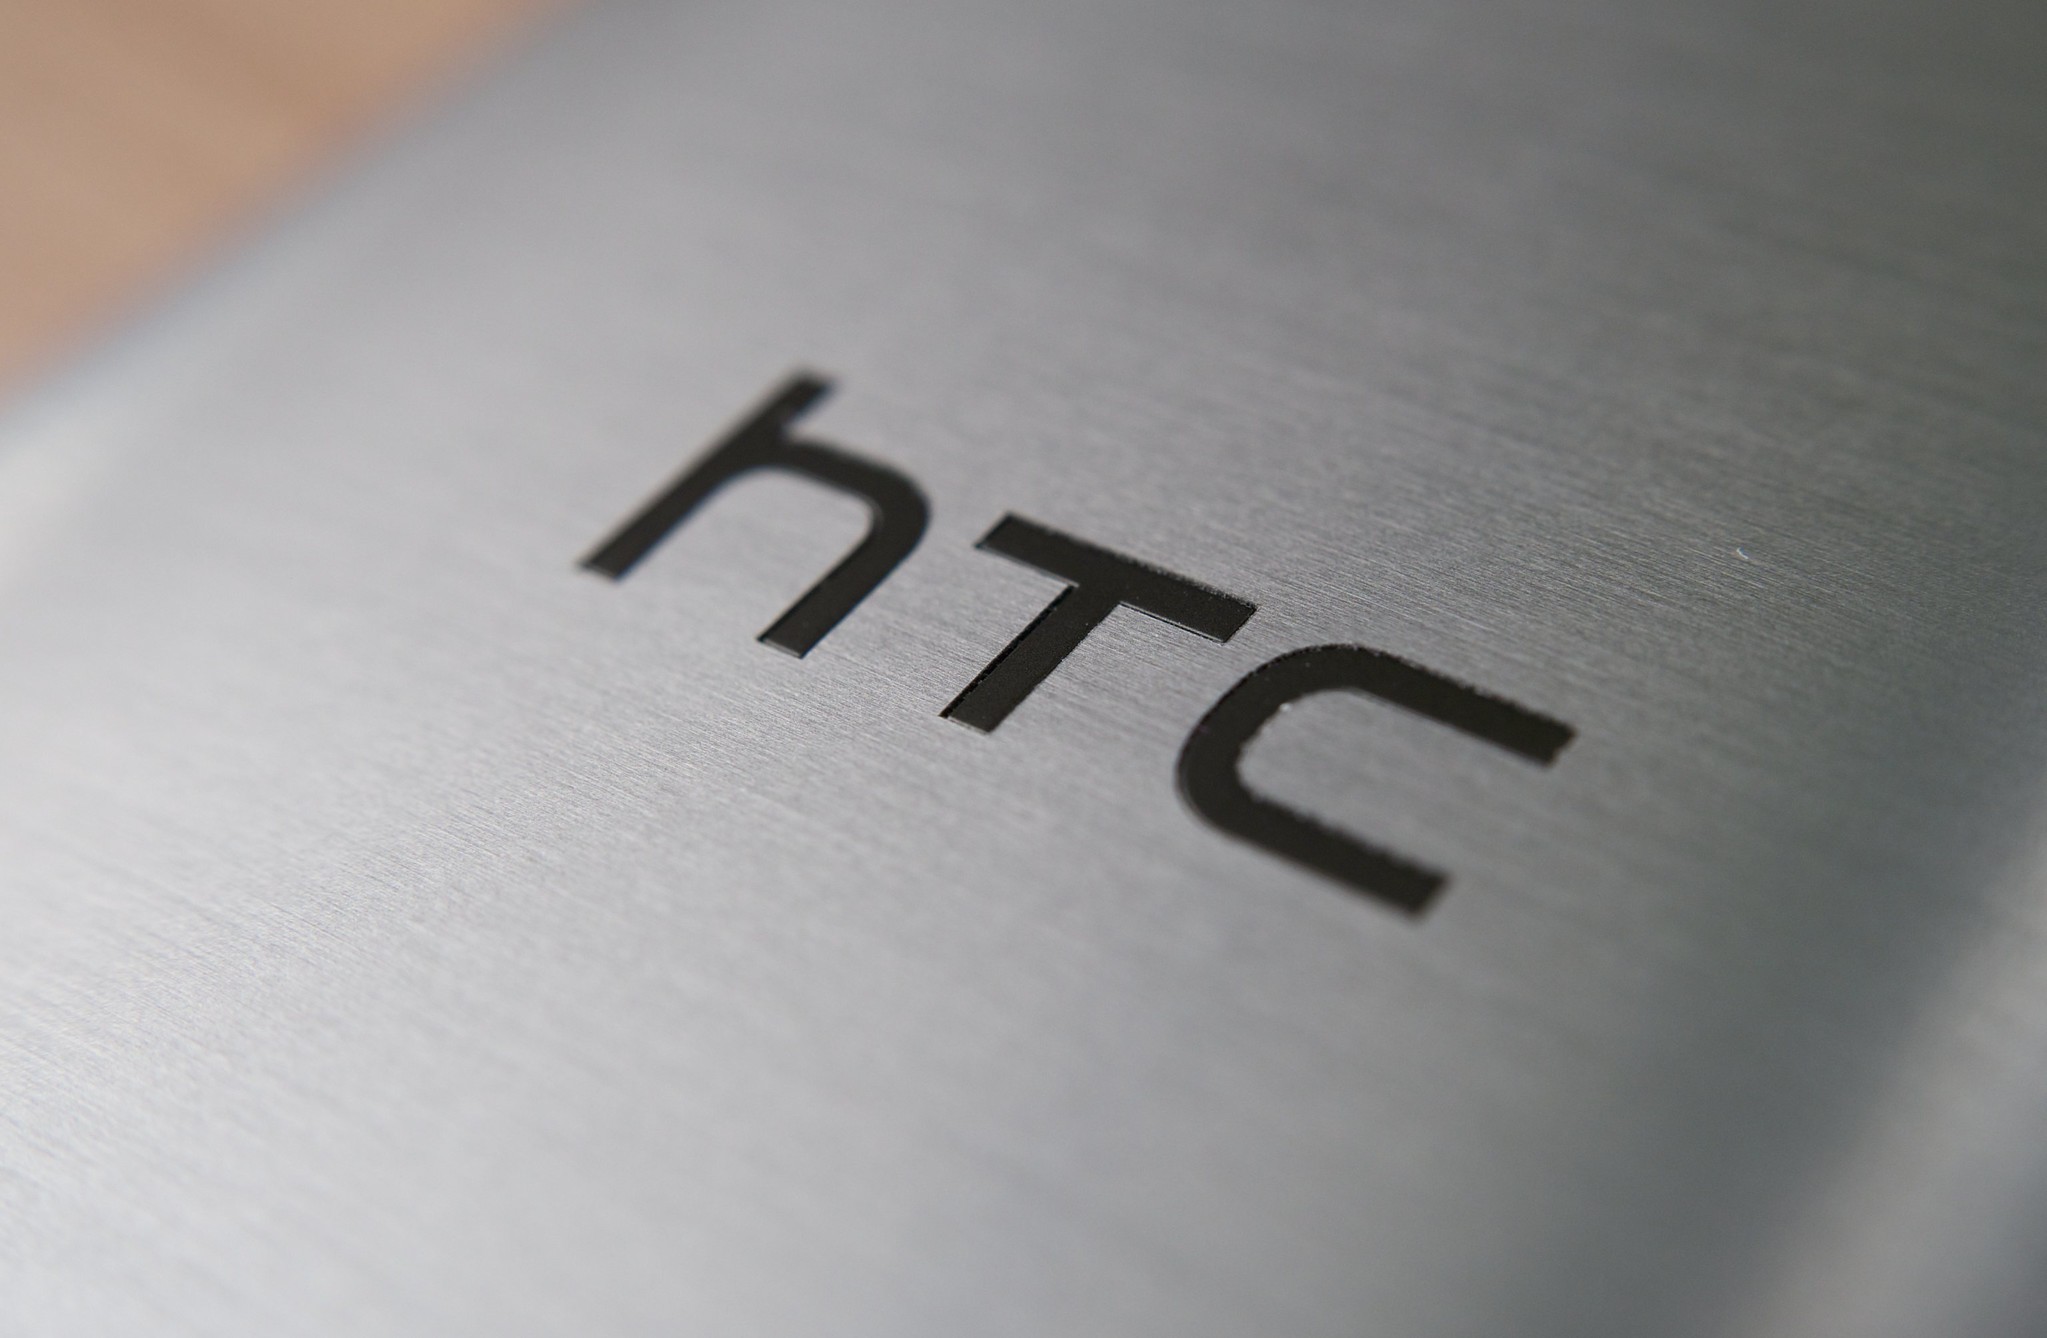 具有主要功能的智能手機 HTC Wildfire R70 概述